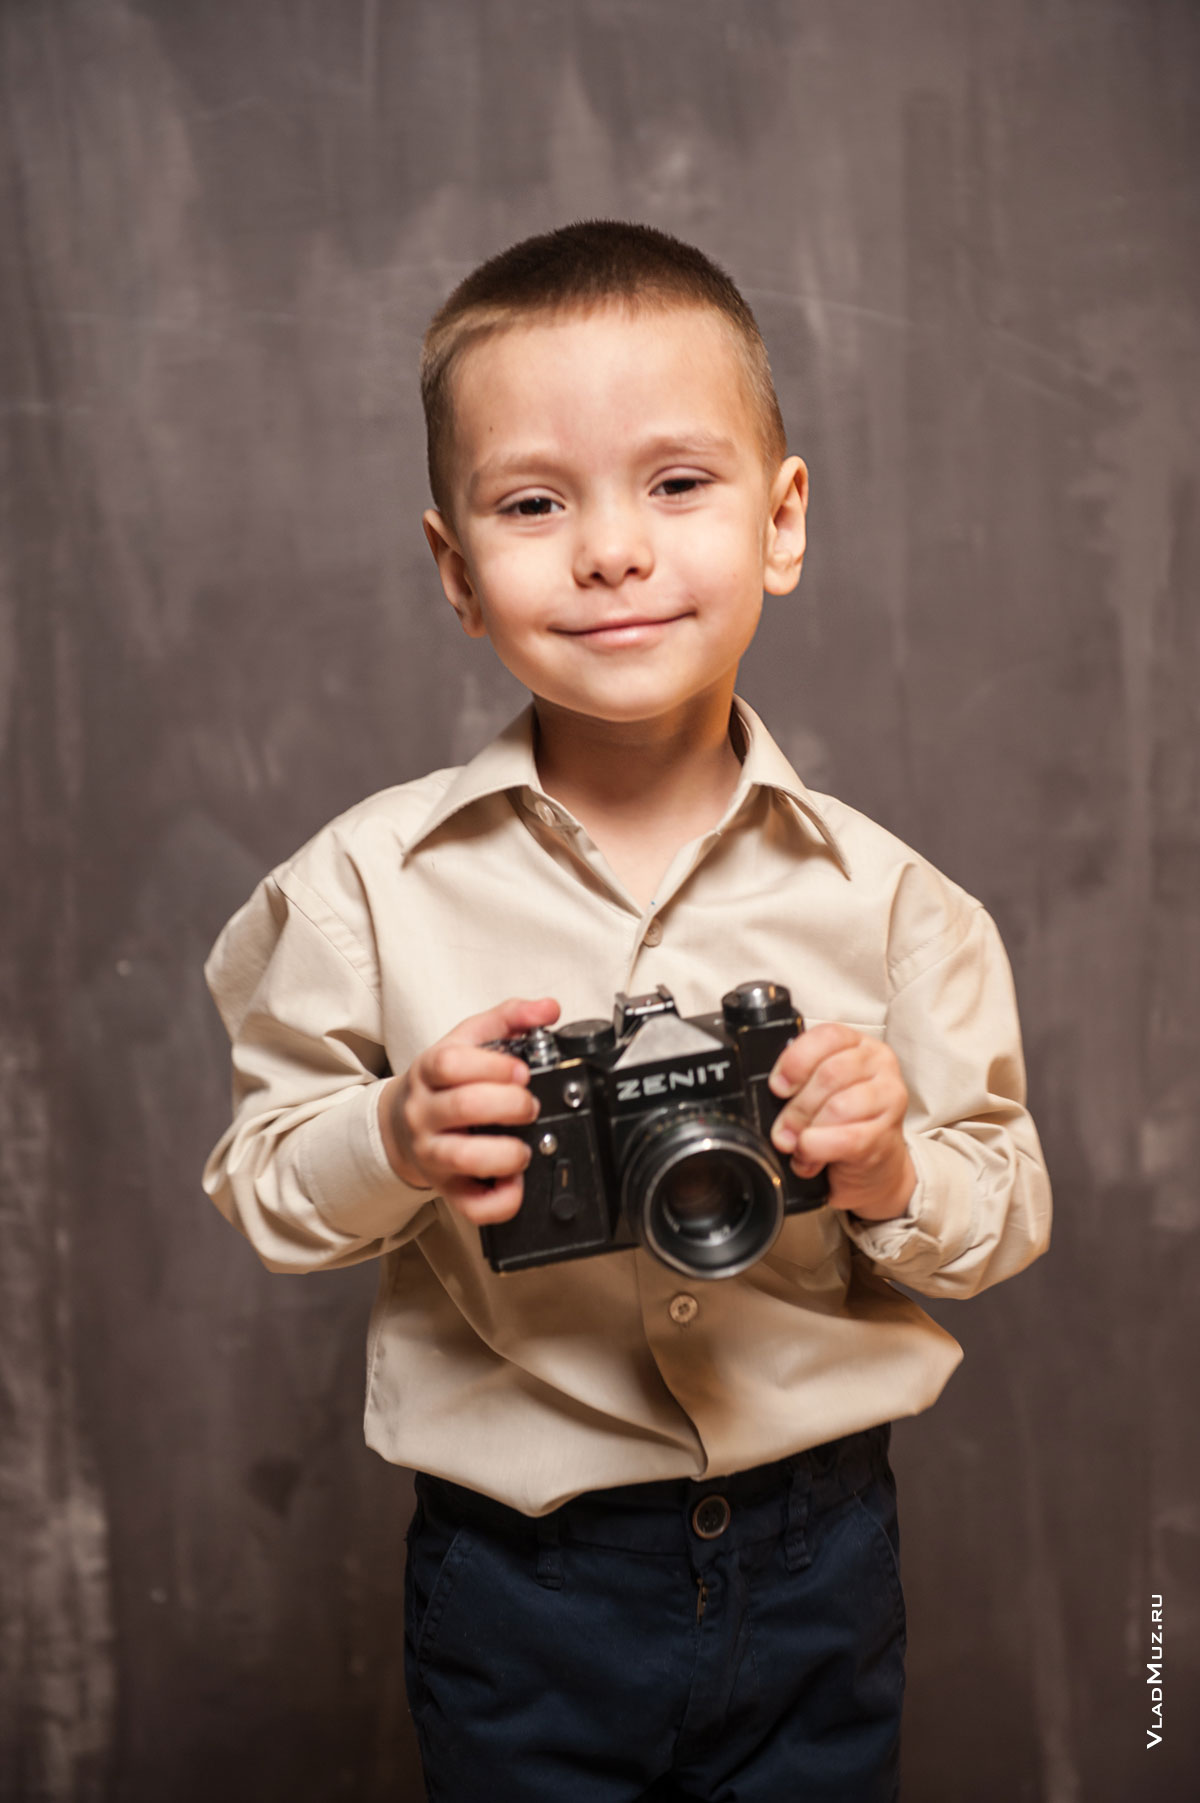 Фото малыша с фотокамерой Zenit в руках